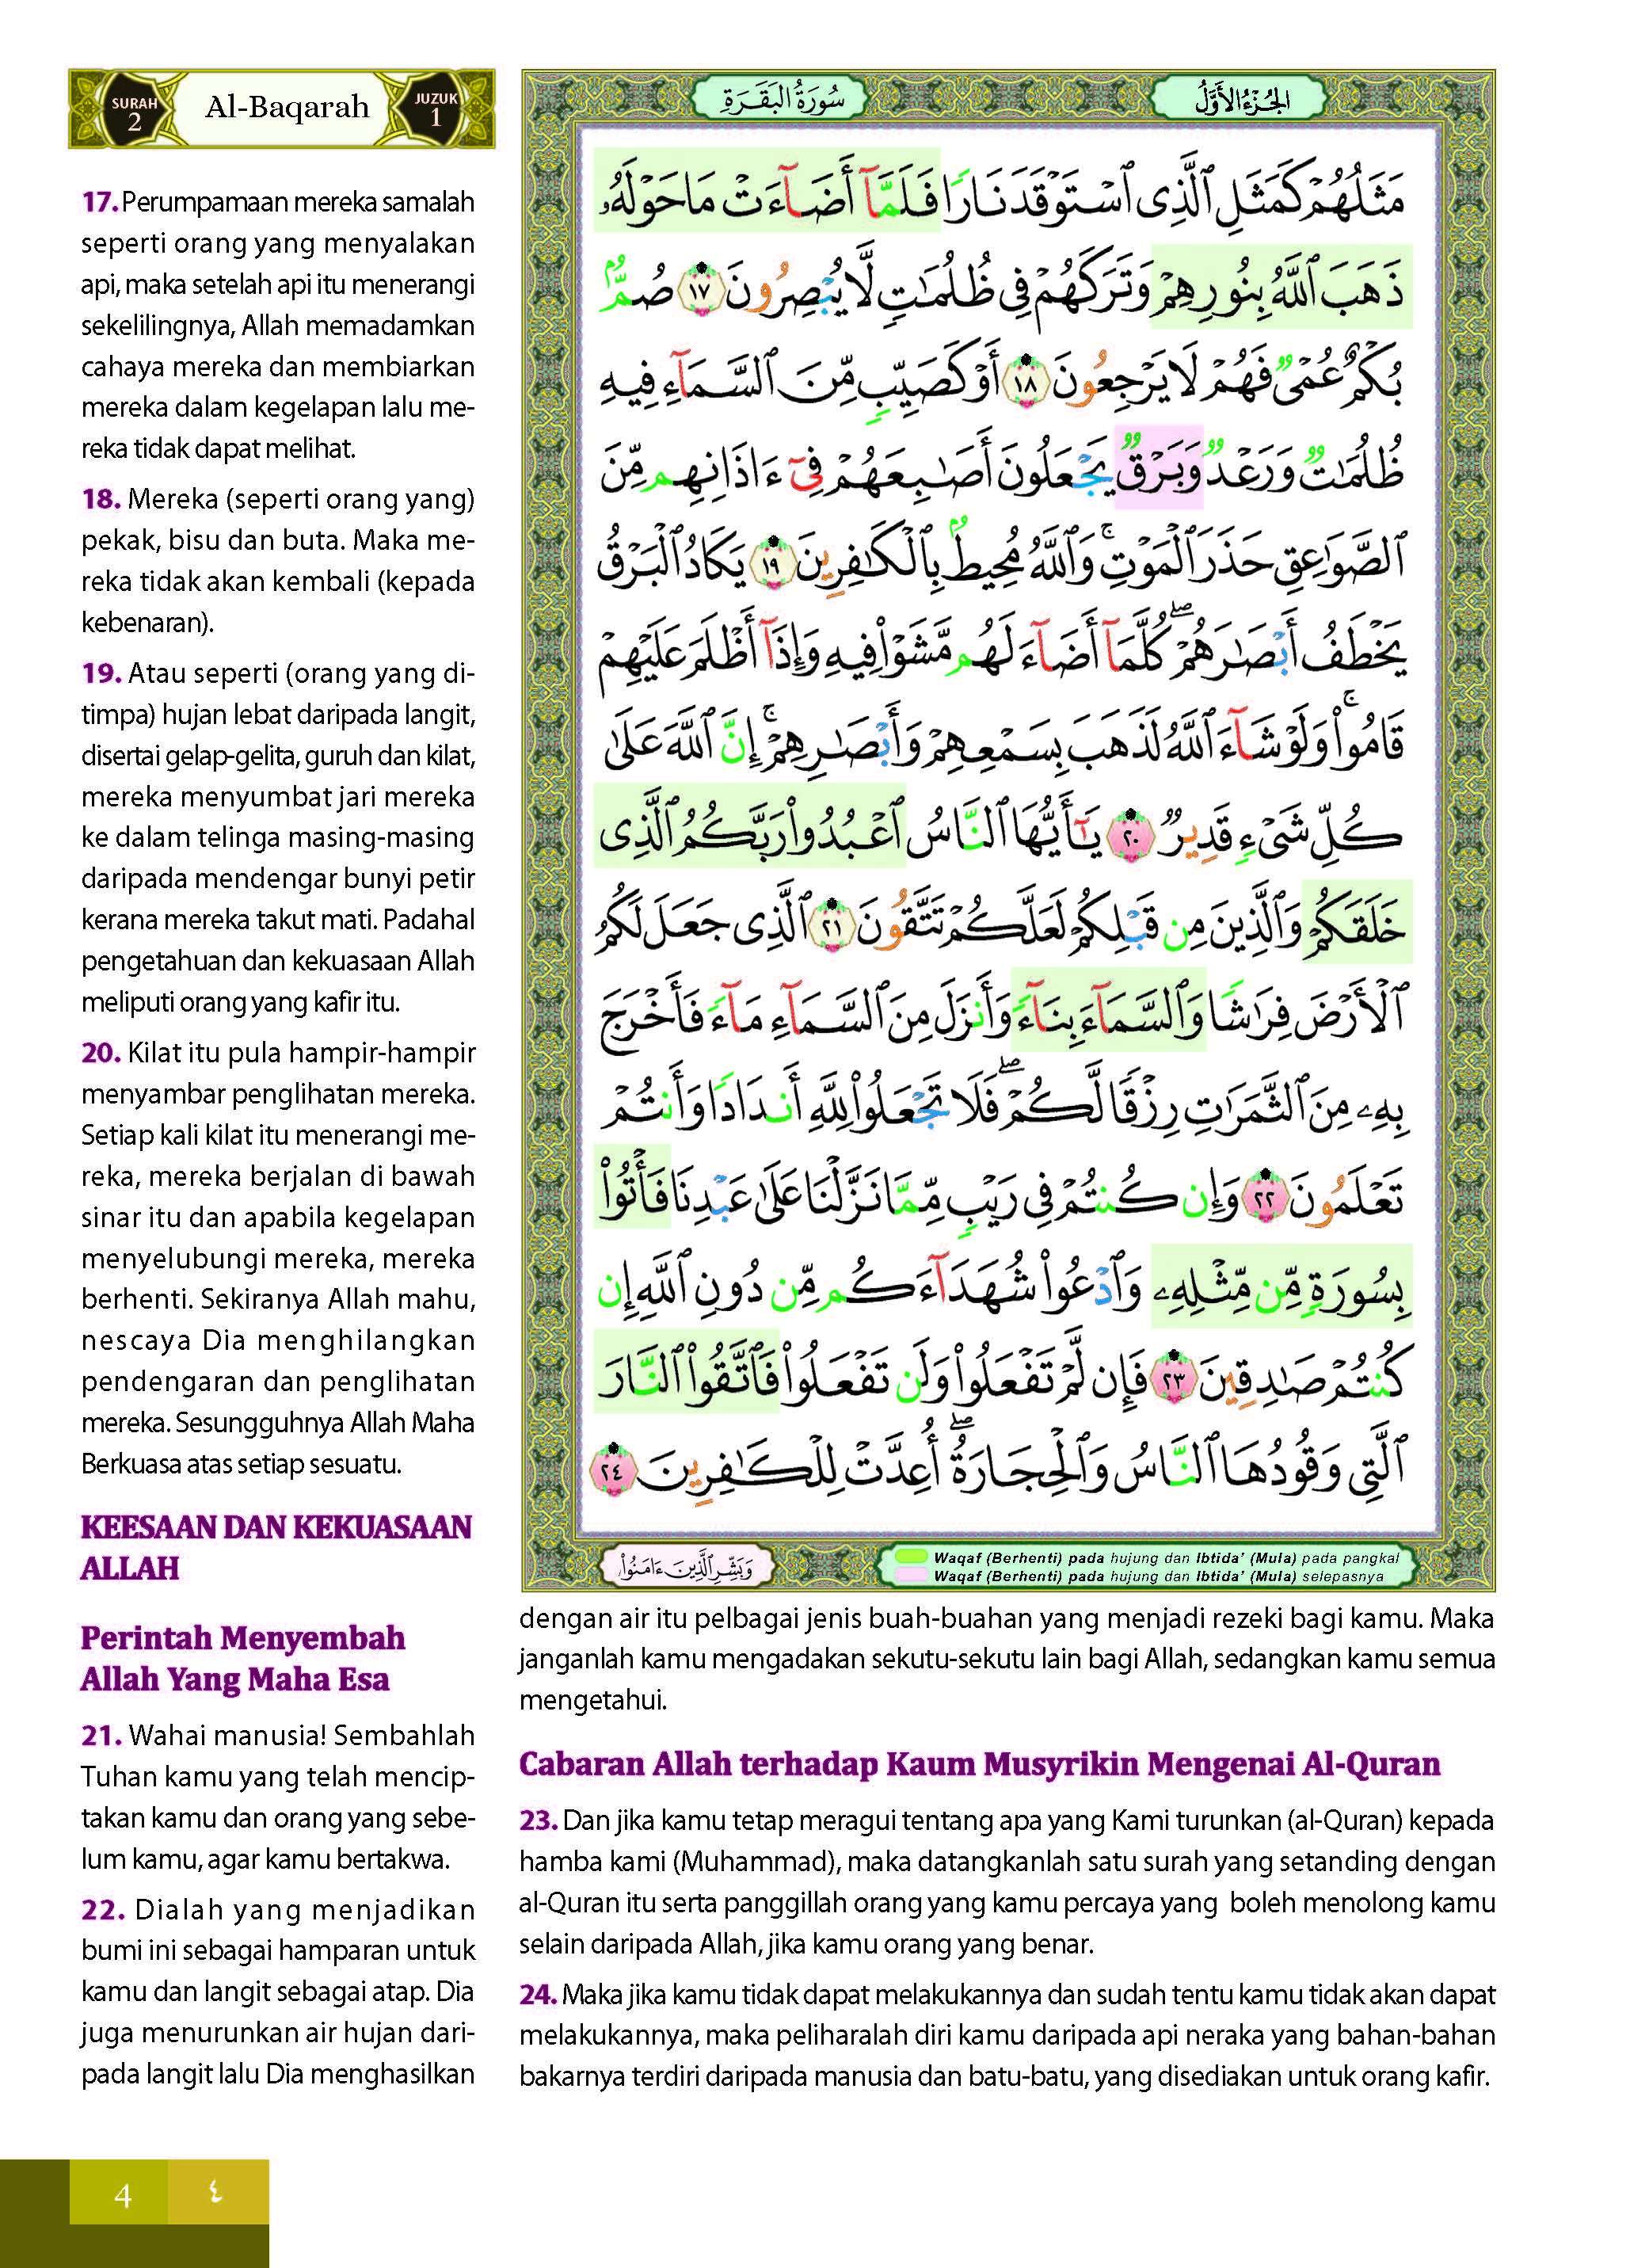 Al-Quran Al-Karim Dan Terjemahan Al-Kamil Dengan Panduan Waqaf & Ibtida’ (Tagging) - (TBAQ1066)